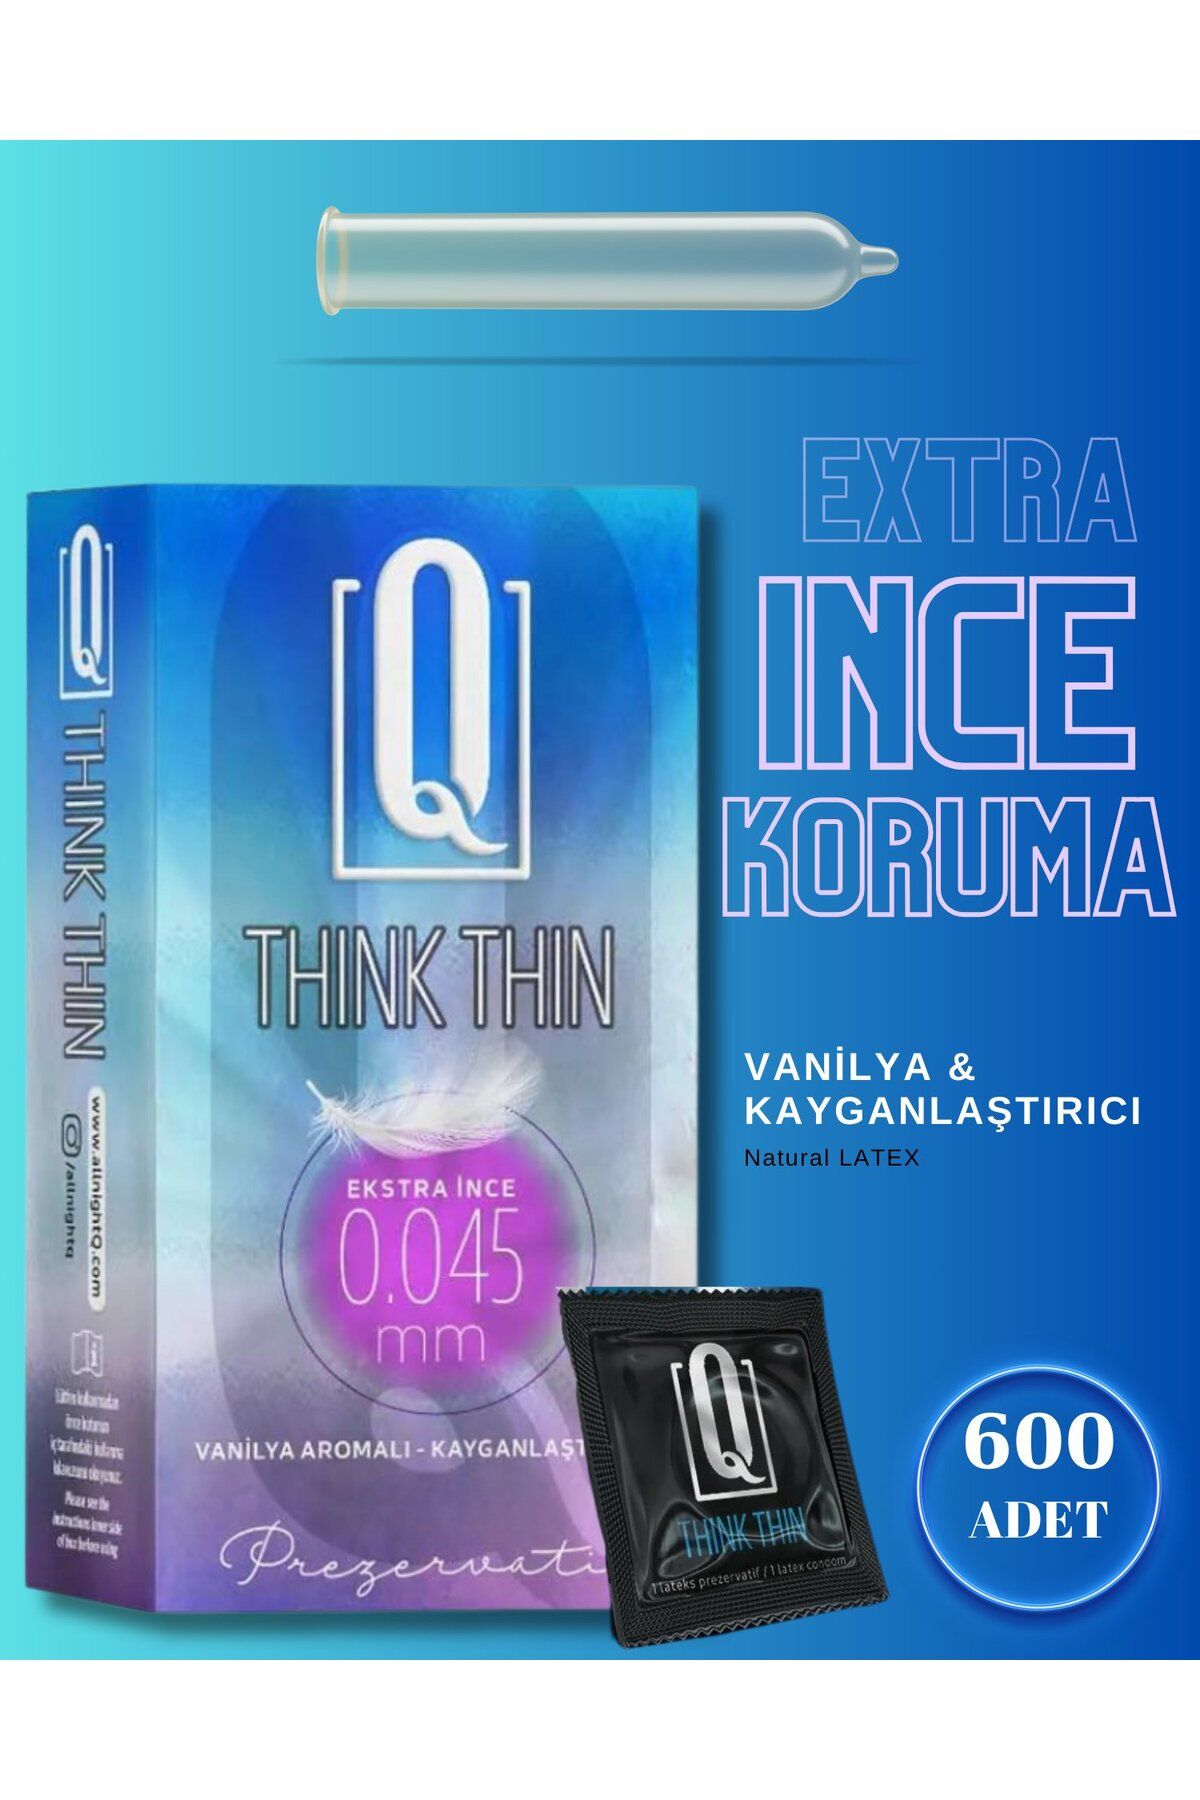 Q LIQUIDS Extra Ince Ve Vanilya Aromalı 600 Adet Prezervatif Kayganlaştırıcılı Condom